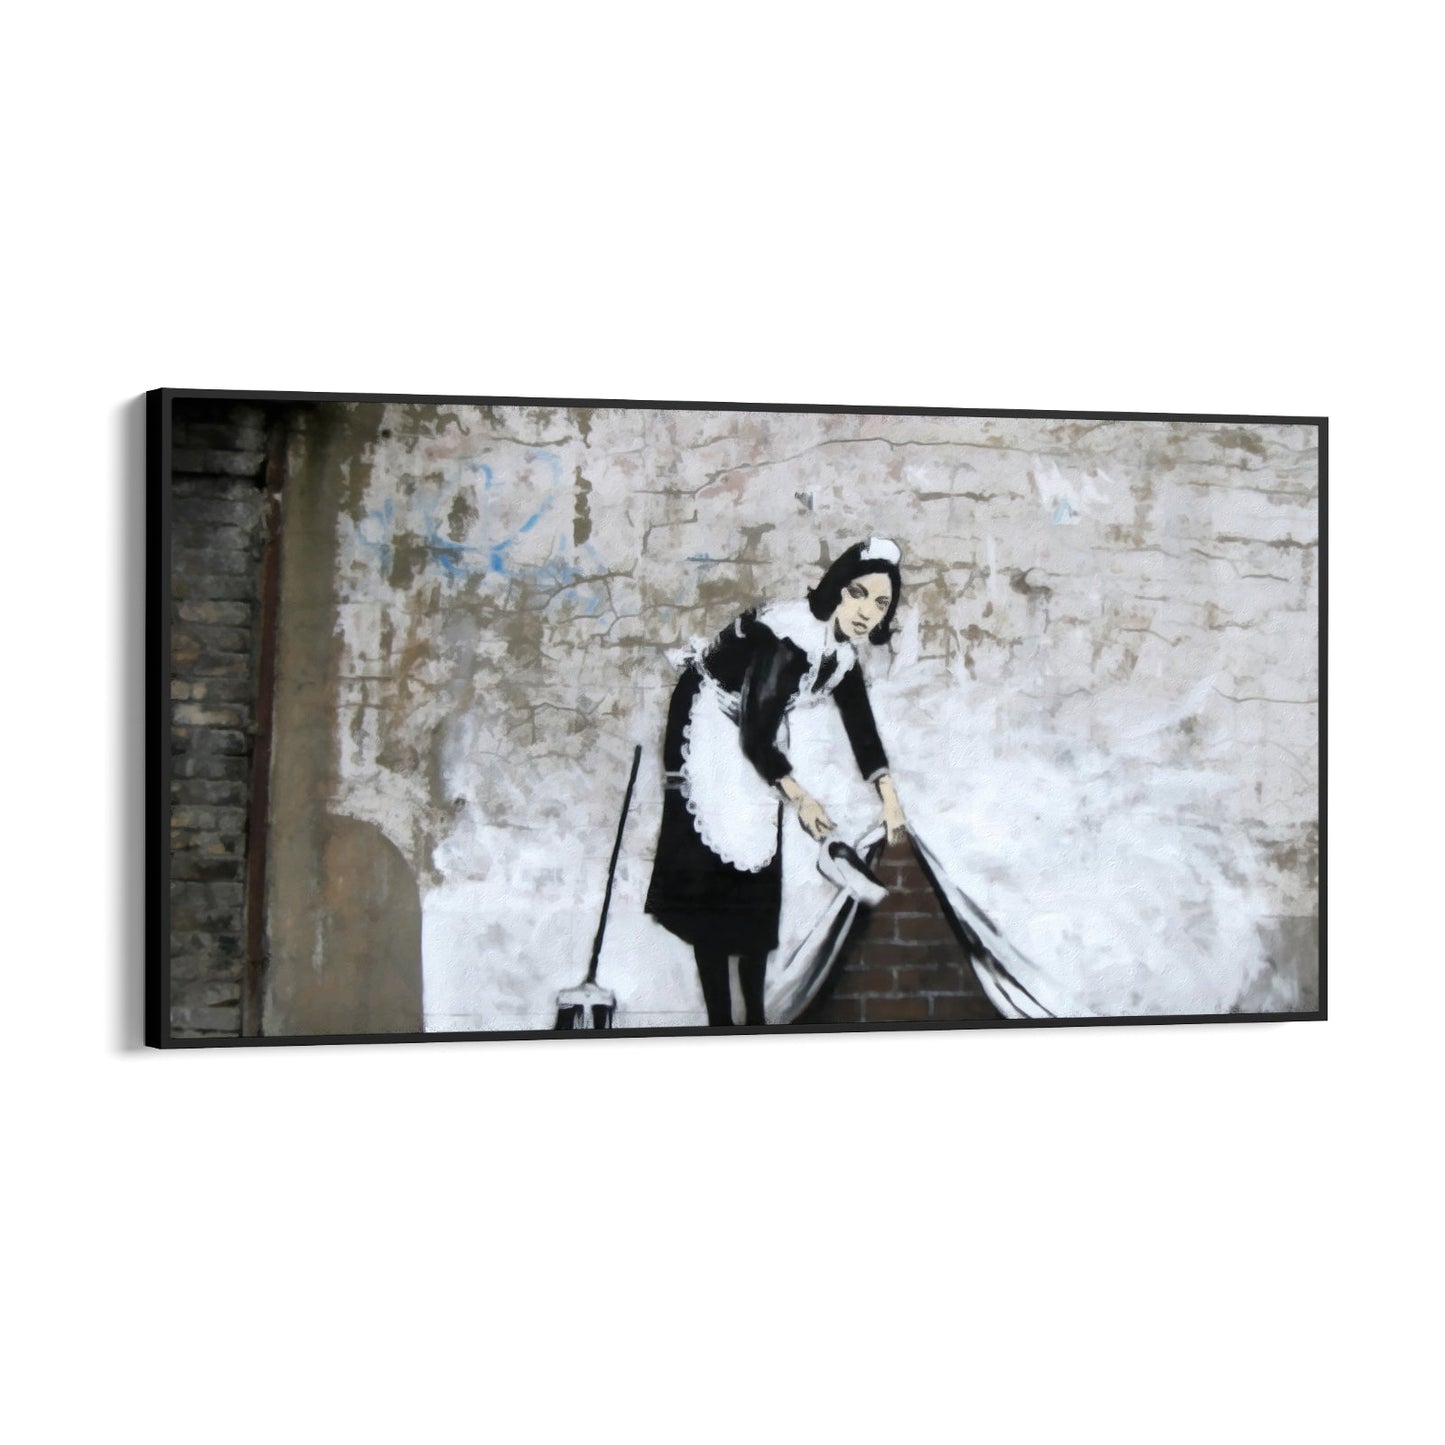 Söpörje a szőnyeg alá – London, Banksy